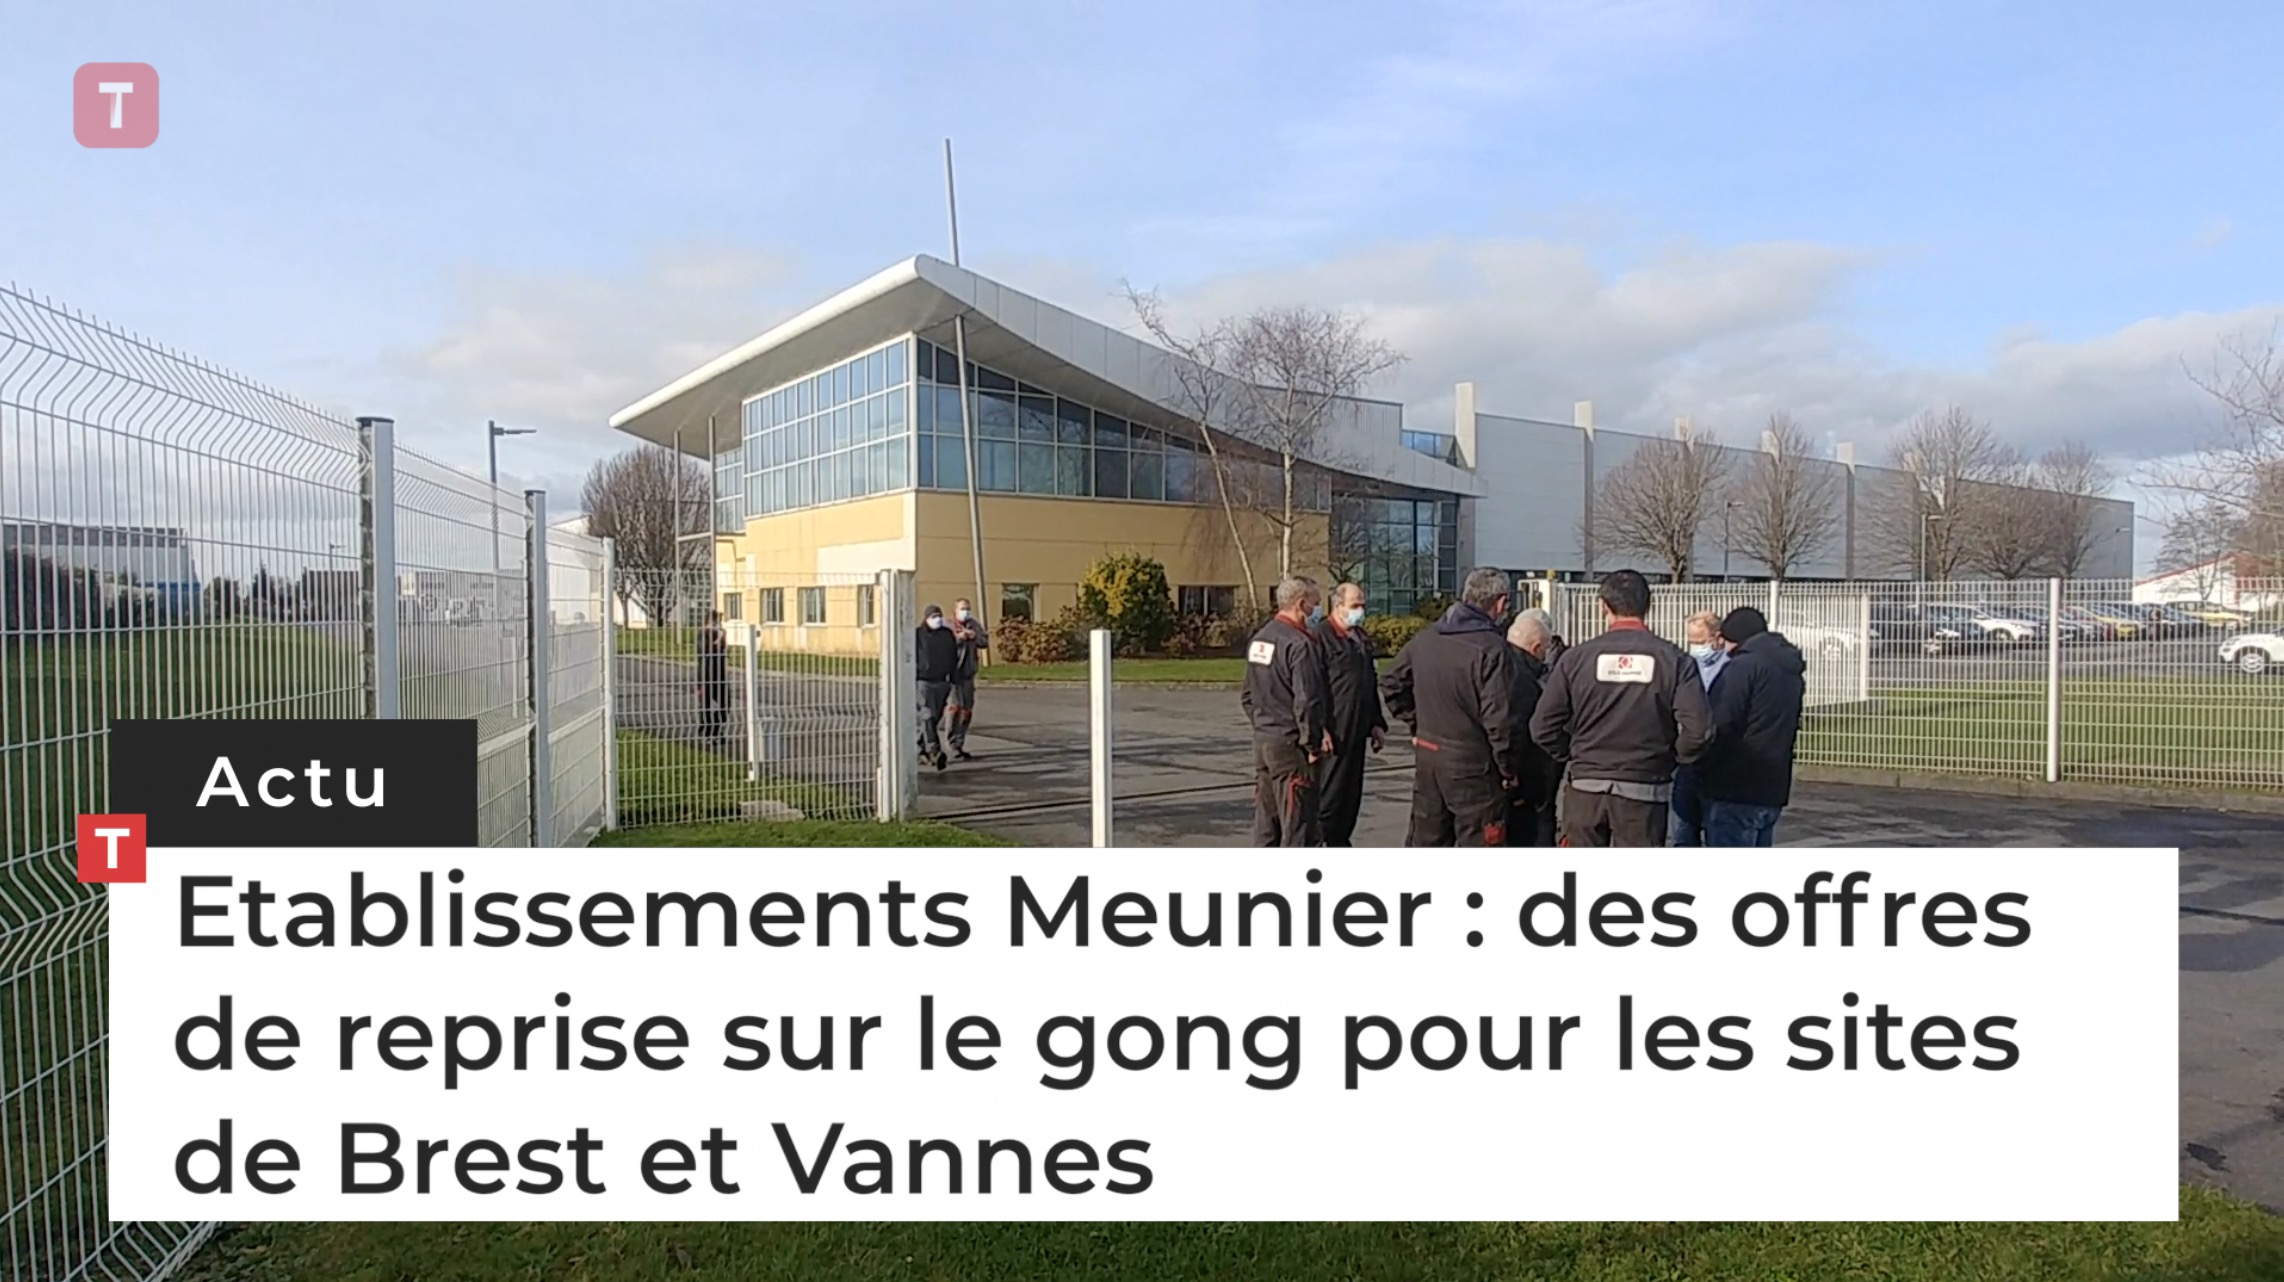 Etablissements Meunier : des offres de reprise sur le gong pour les sites de Brest et Vannes (Le Télégramme)